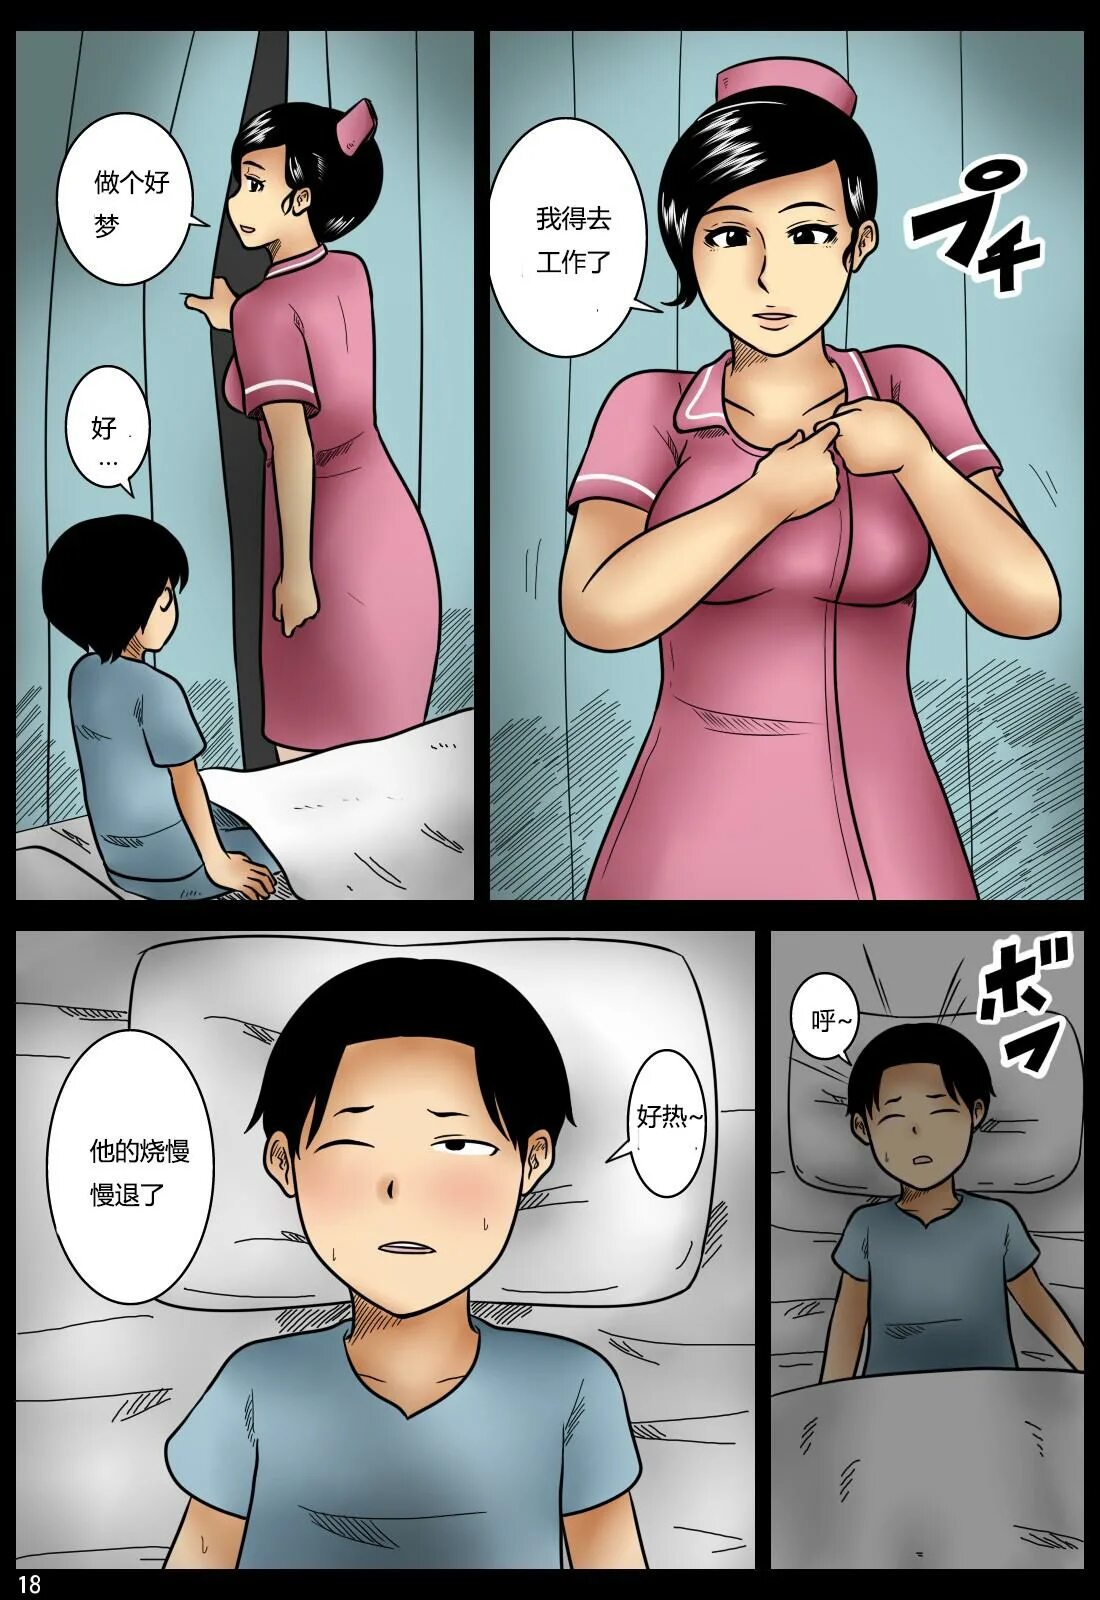 Комиксы мать 18. Мать и сын комикс японский. Mikan Dou комиксы. Комикс мать.